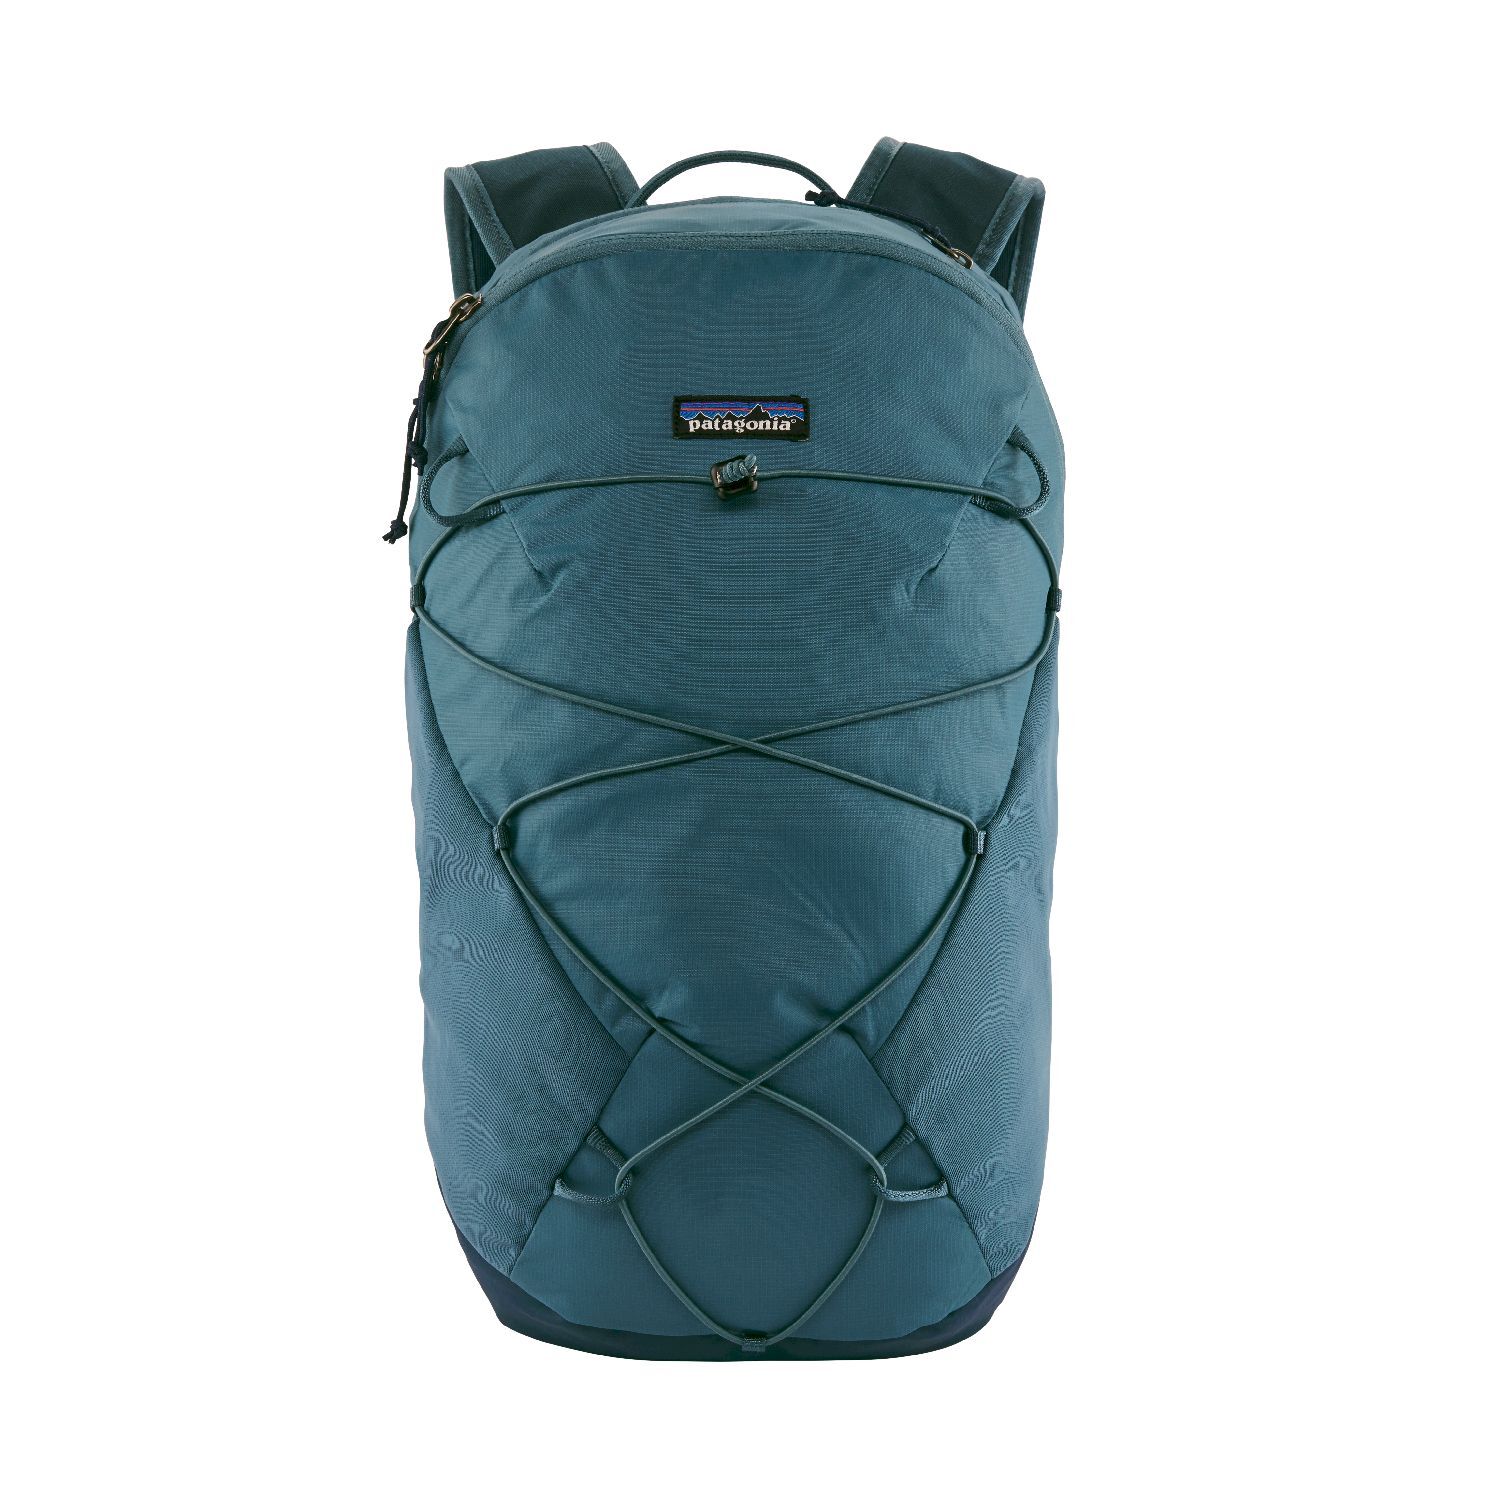 Patagonia Altvia Pack 14L - Walking backpack